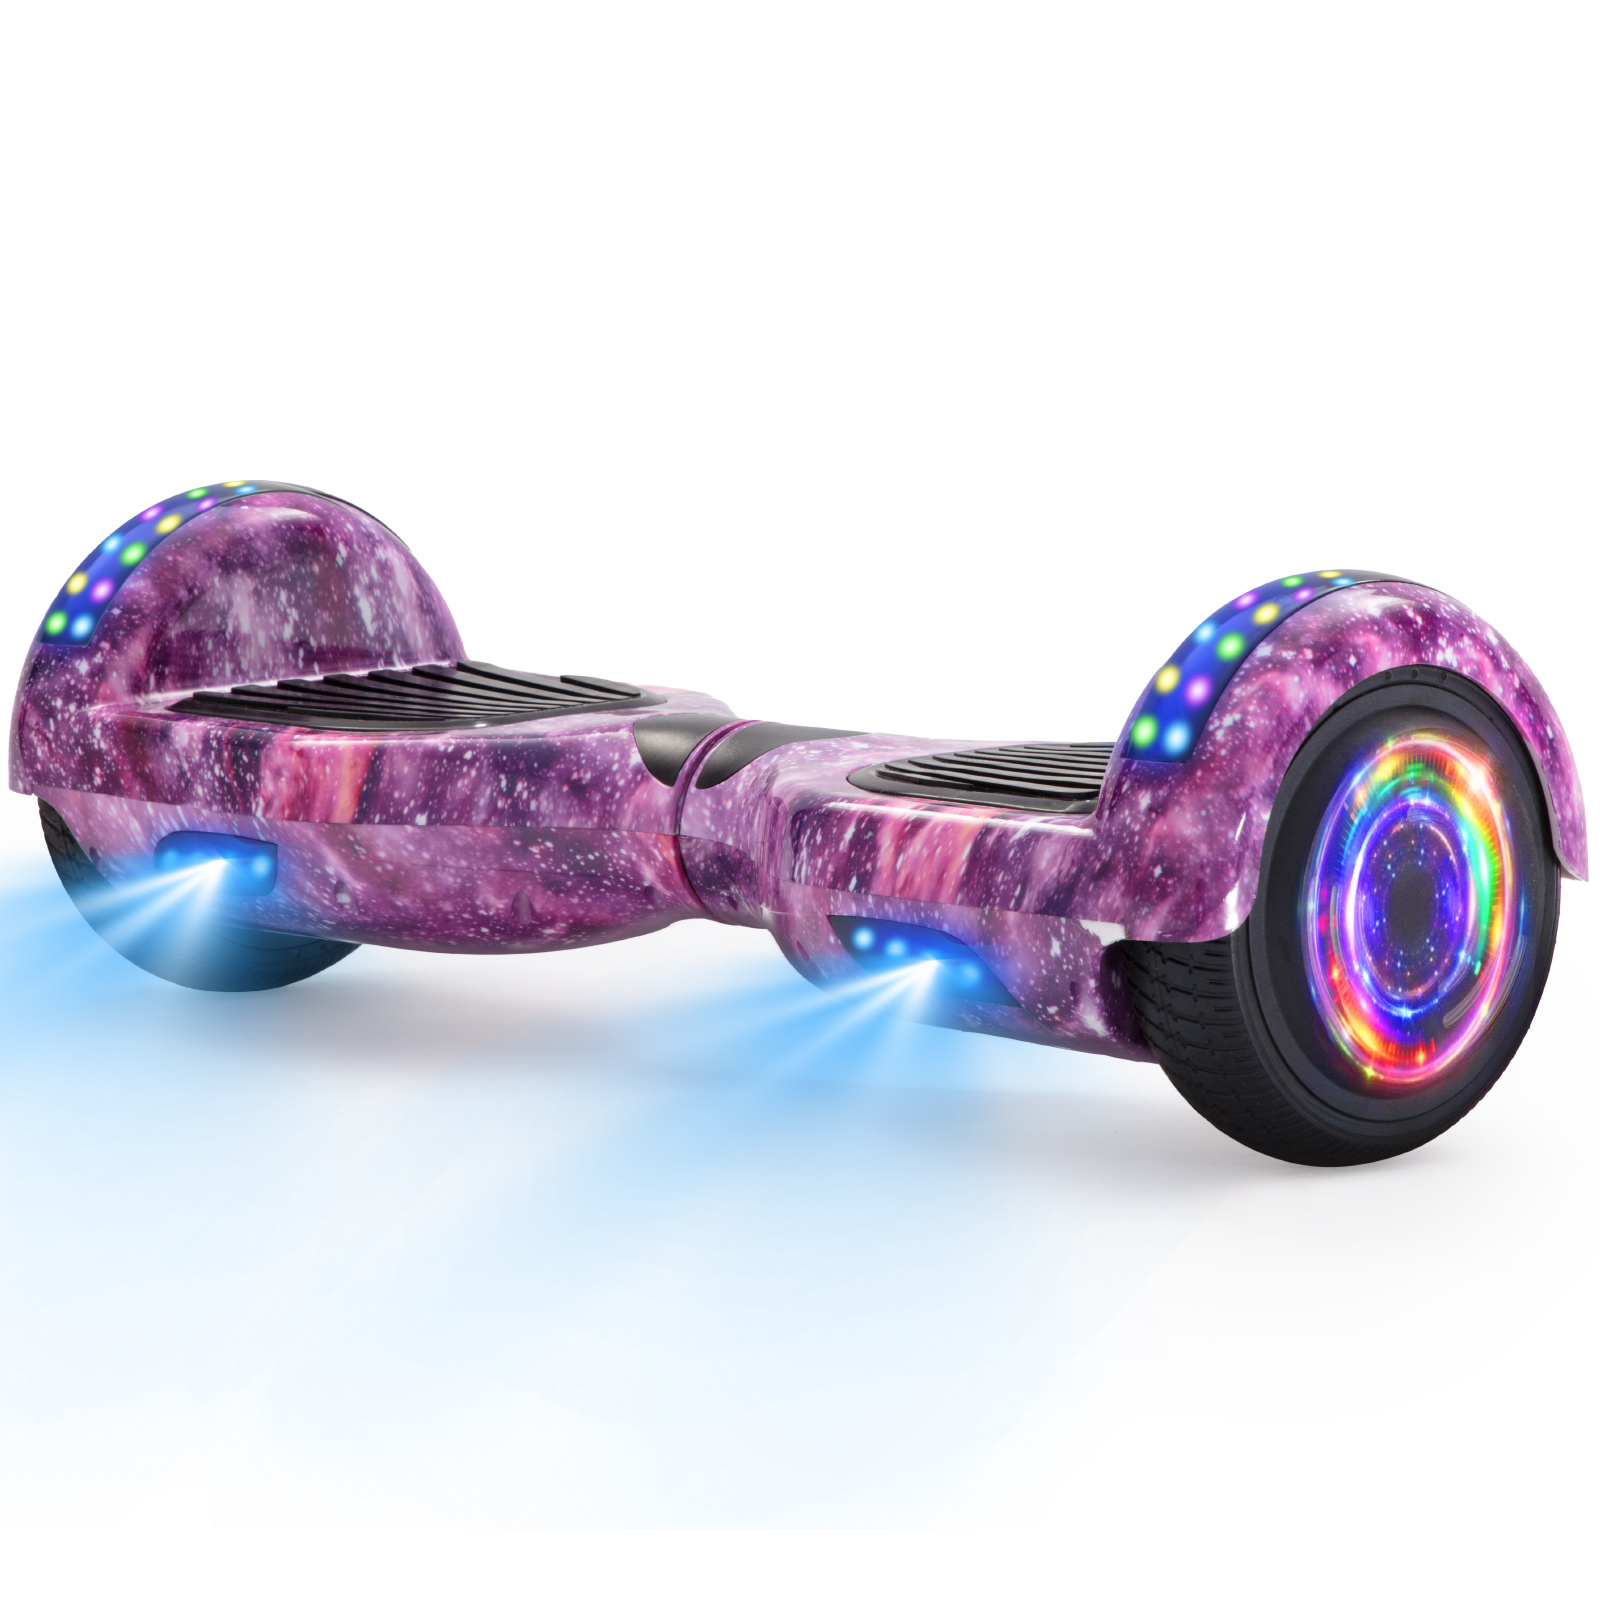 Neues 6,5" lila Galaxie Hoverboard für Kinder, mit Bluetooth Musik Lautsprecher und Disco LED Licht - 500W 12km/h